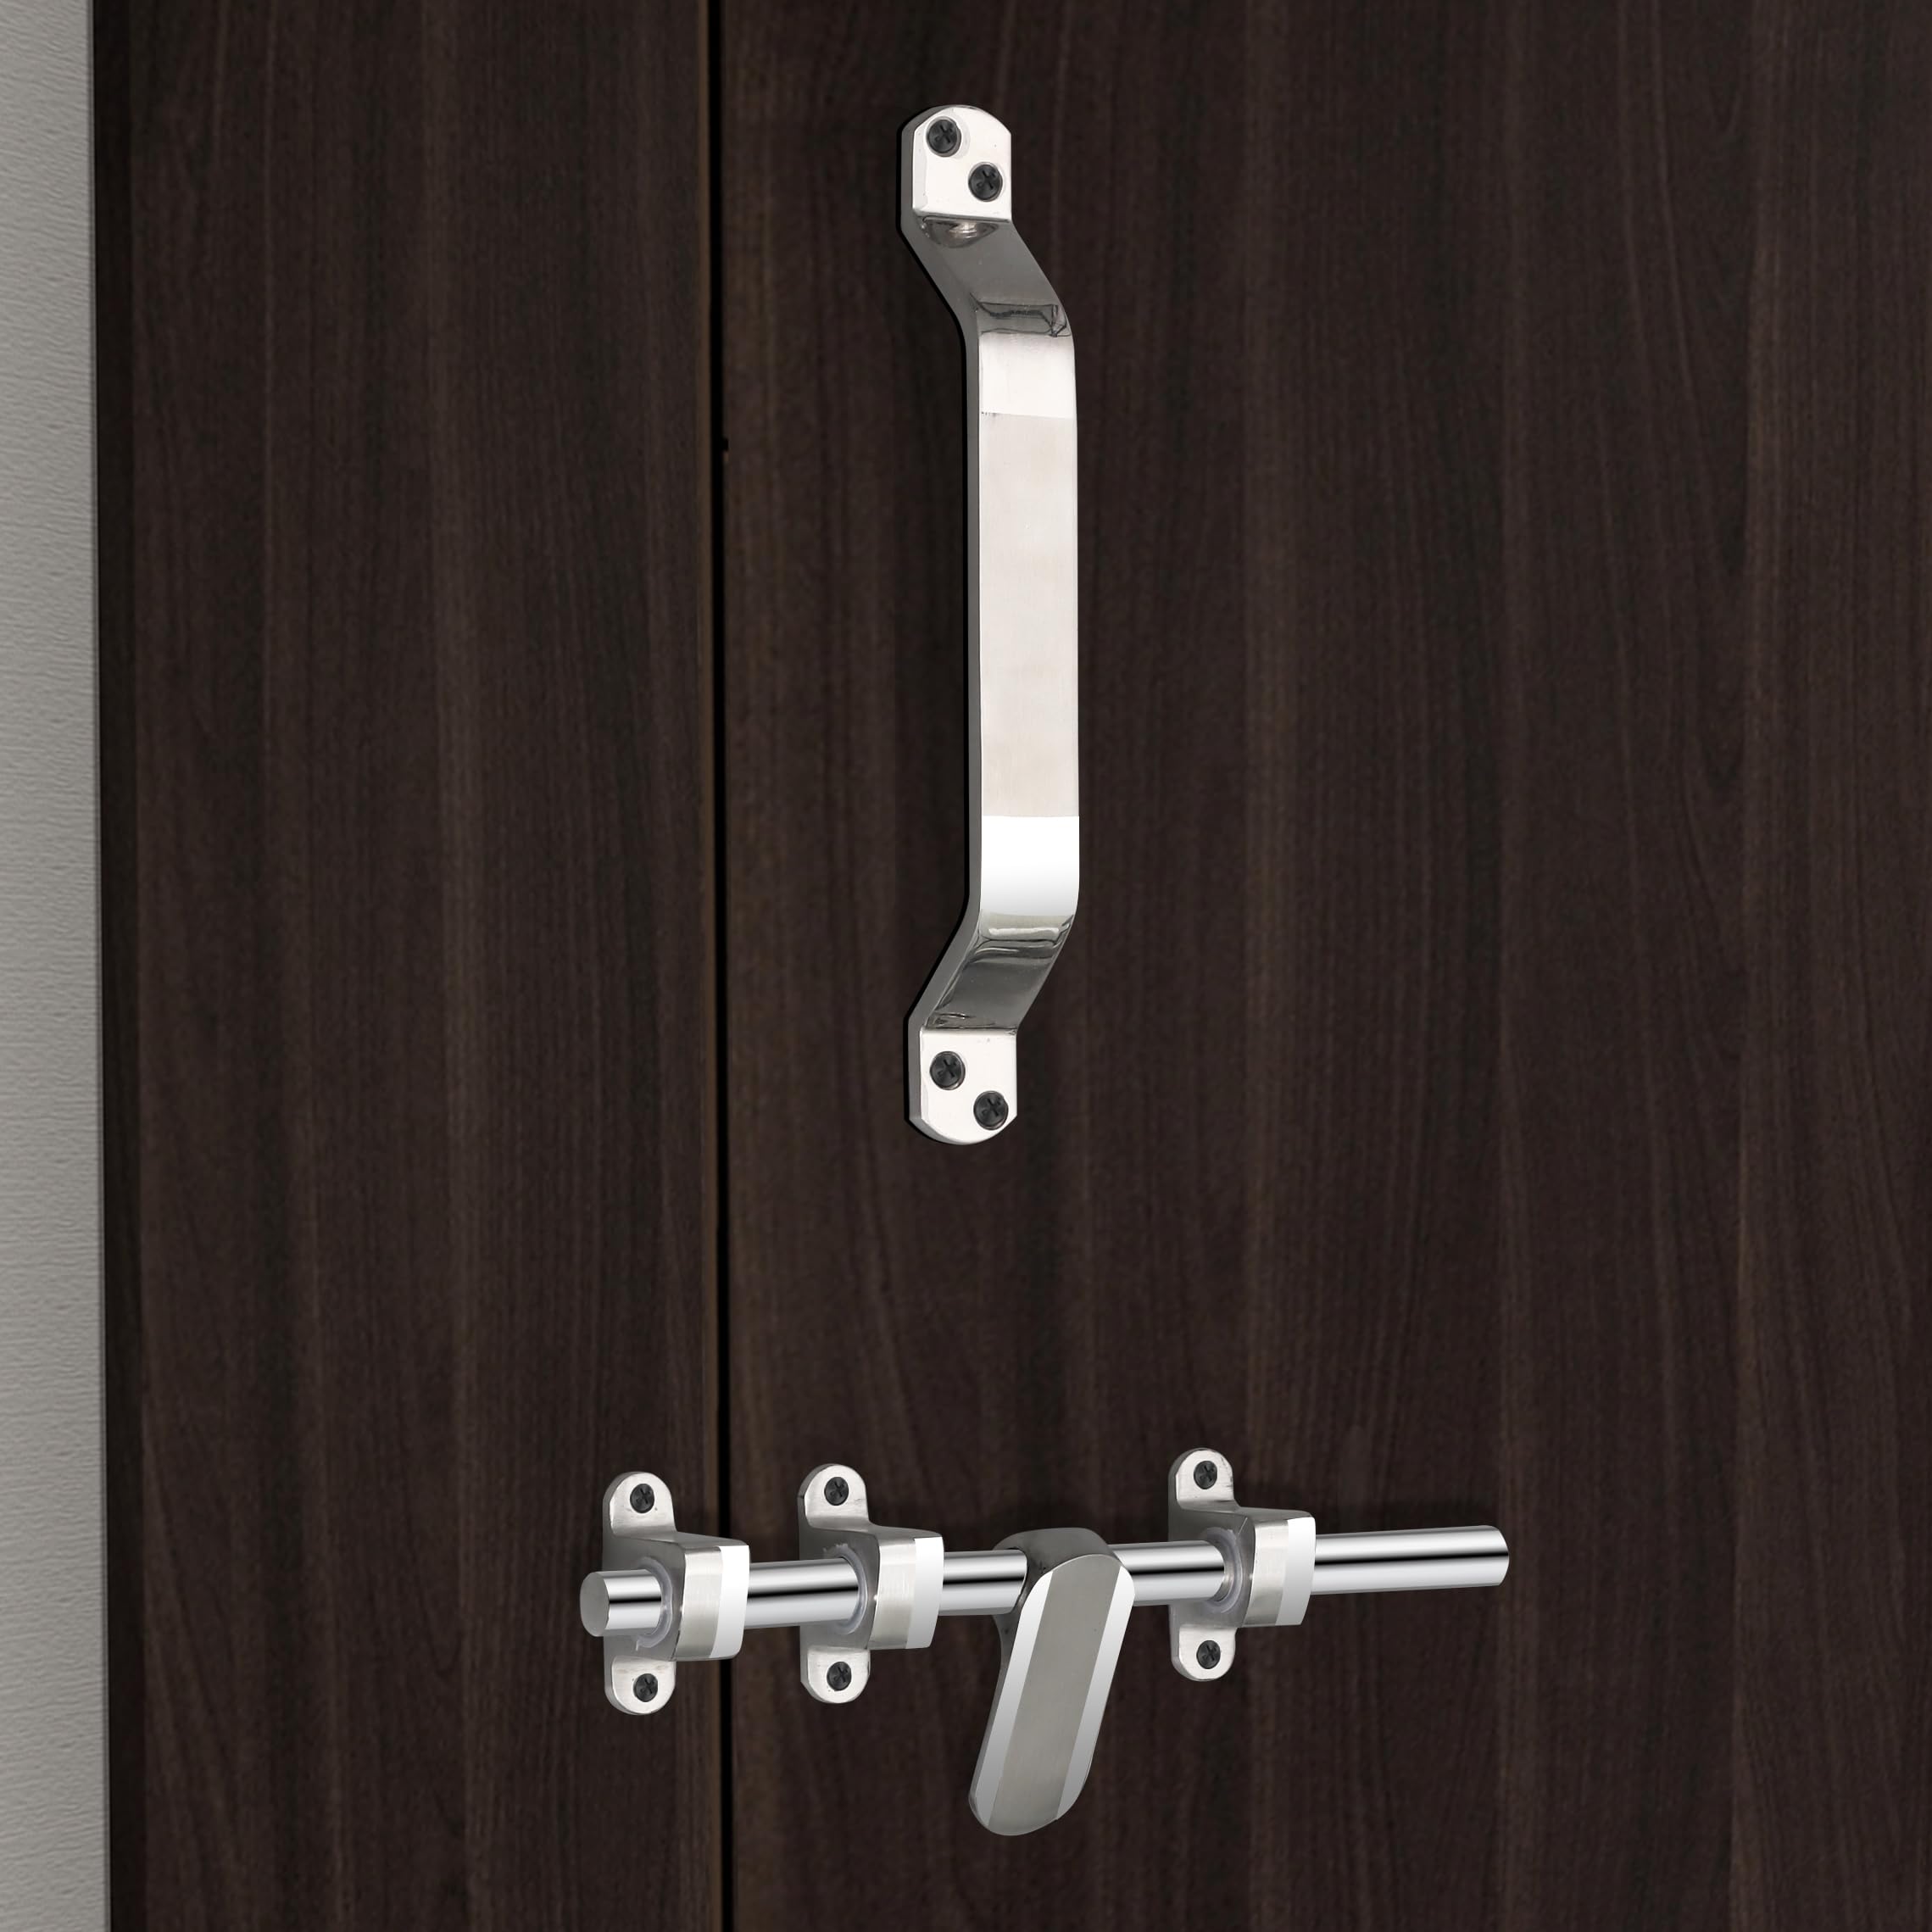 Plantex Stainless Steel Door Kit for Single Door/Door Hardware/Door Accessories (10 inch Al-Drop,8 inch Latch, 8 inch 2 Handles,7 inch Tower Bolt and 4 inch Door Stopper) - (DK-04-Combi)